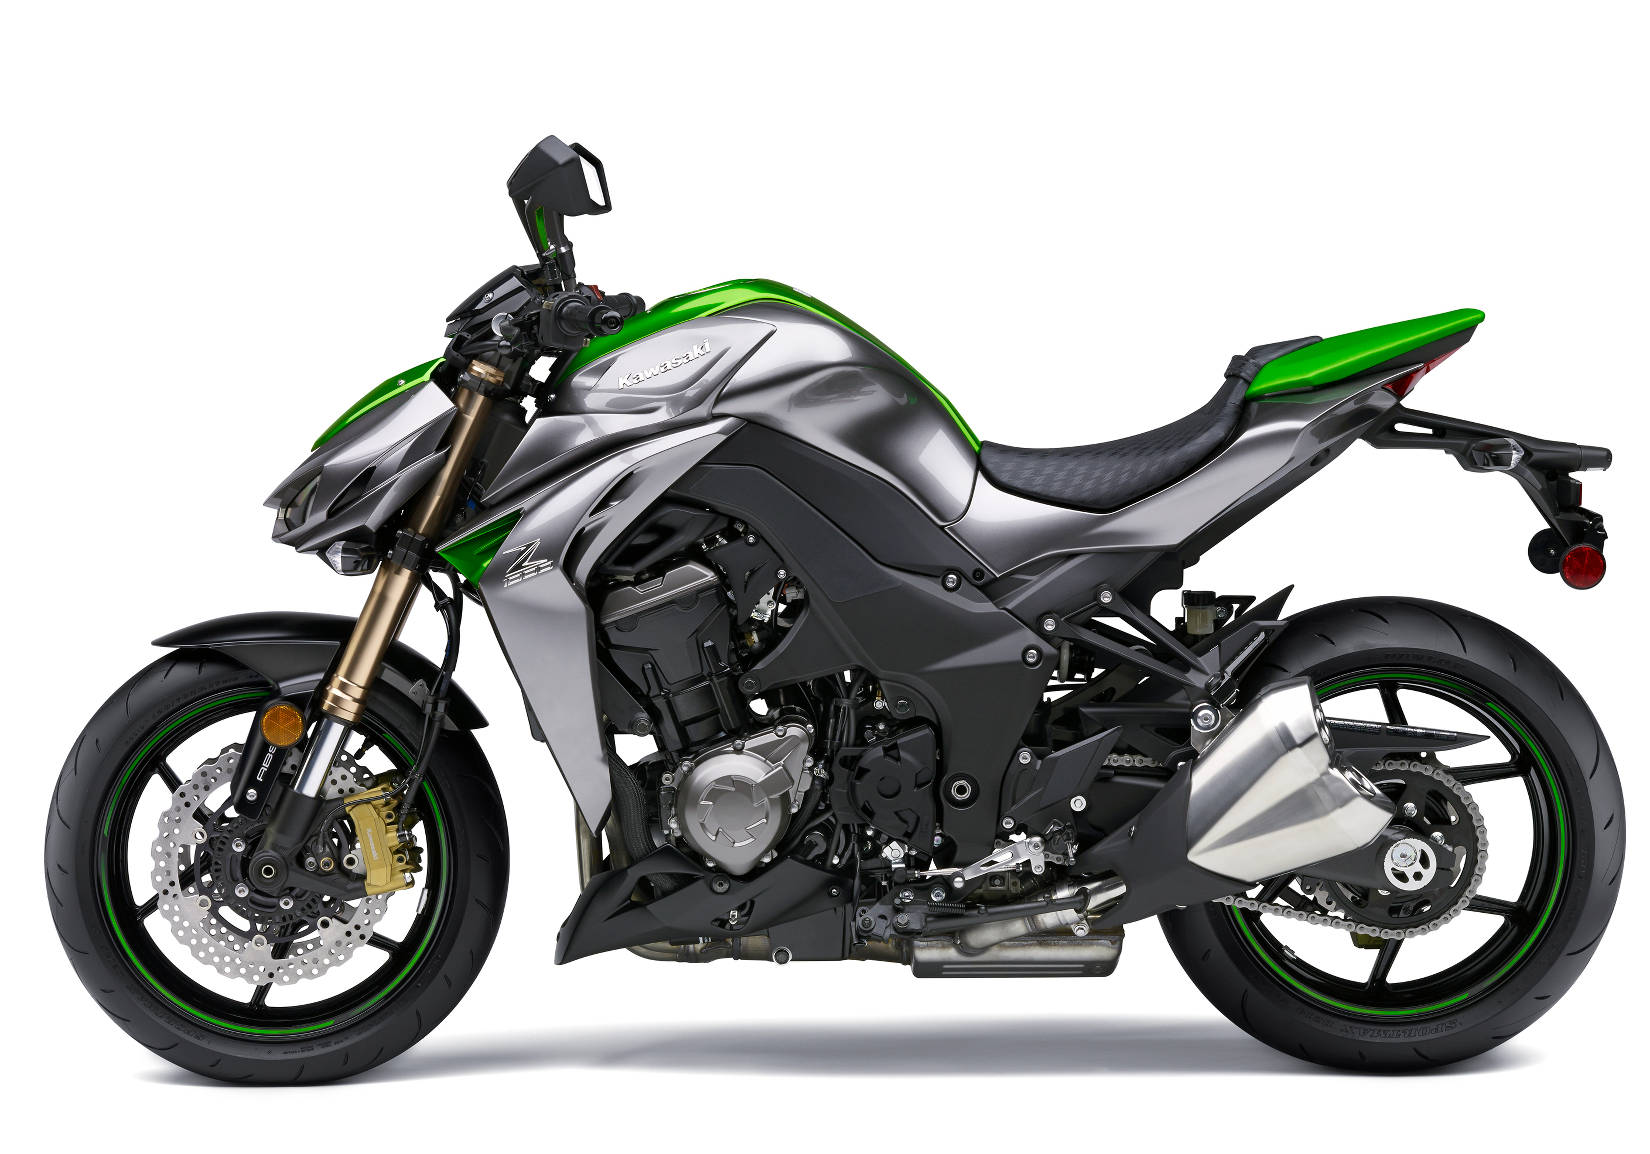 Kawasaki Z1000 Coming